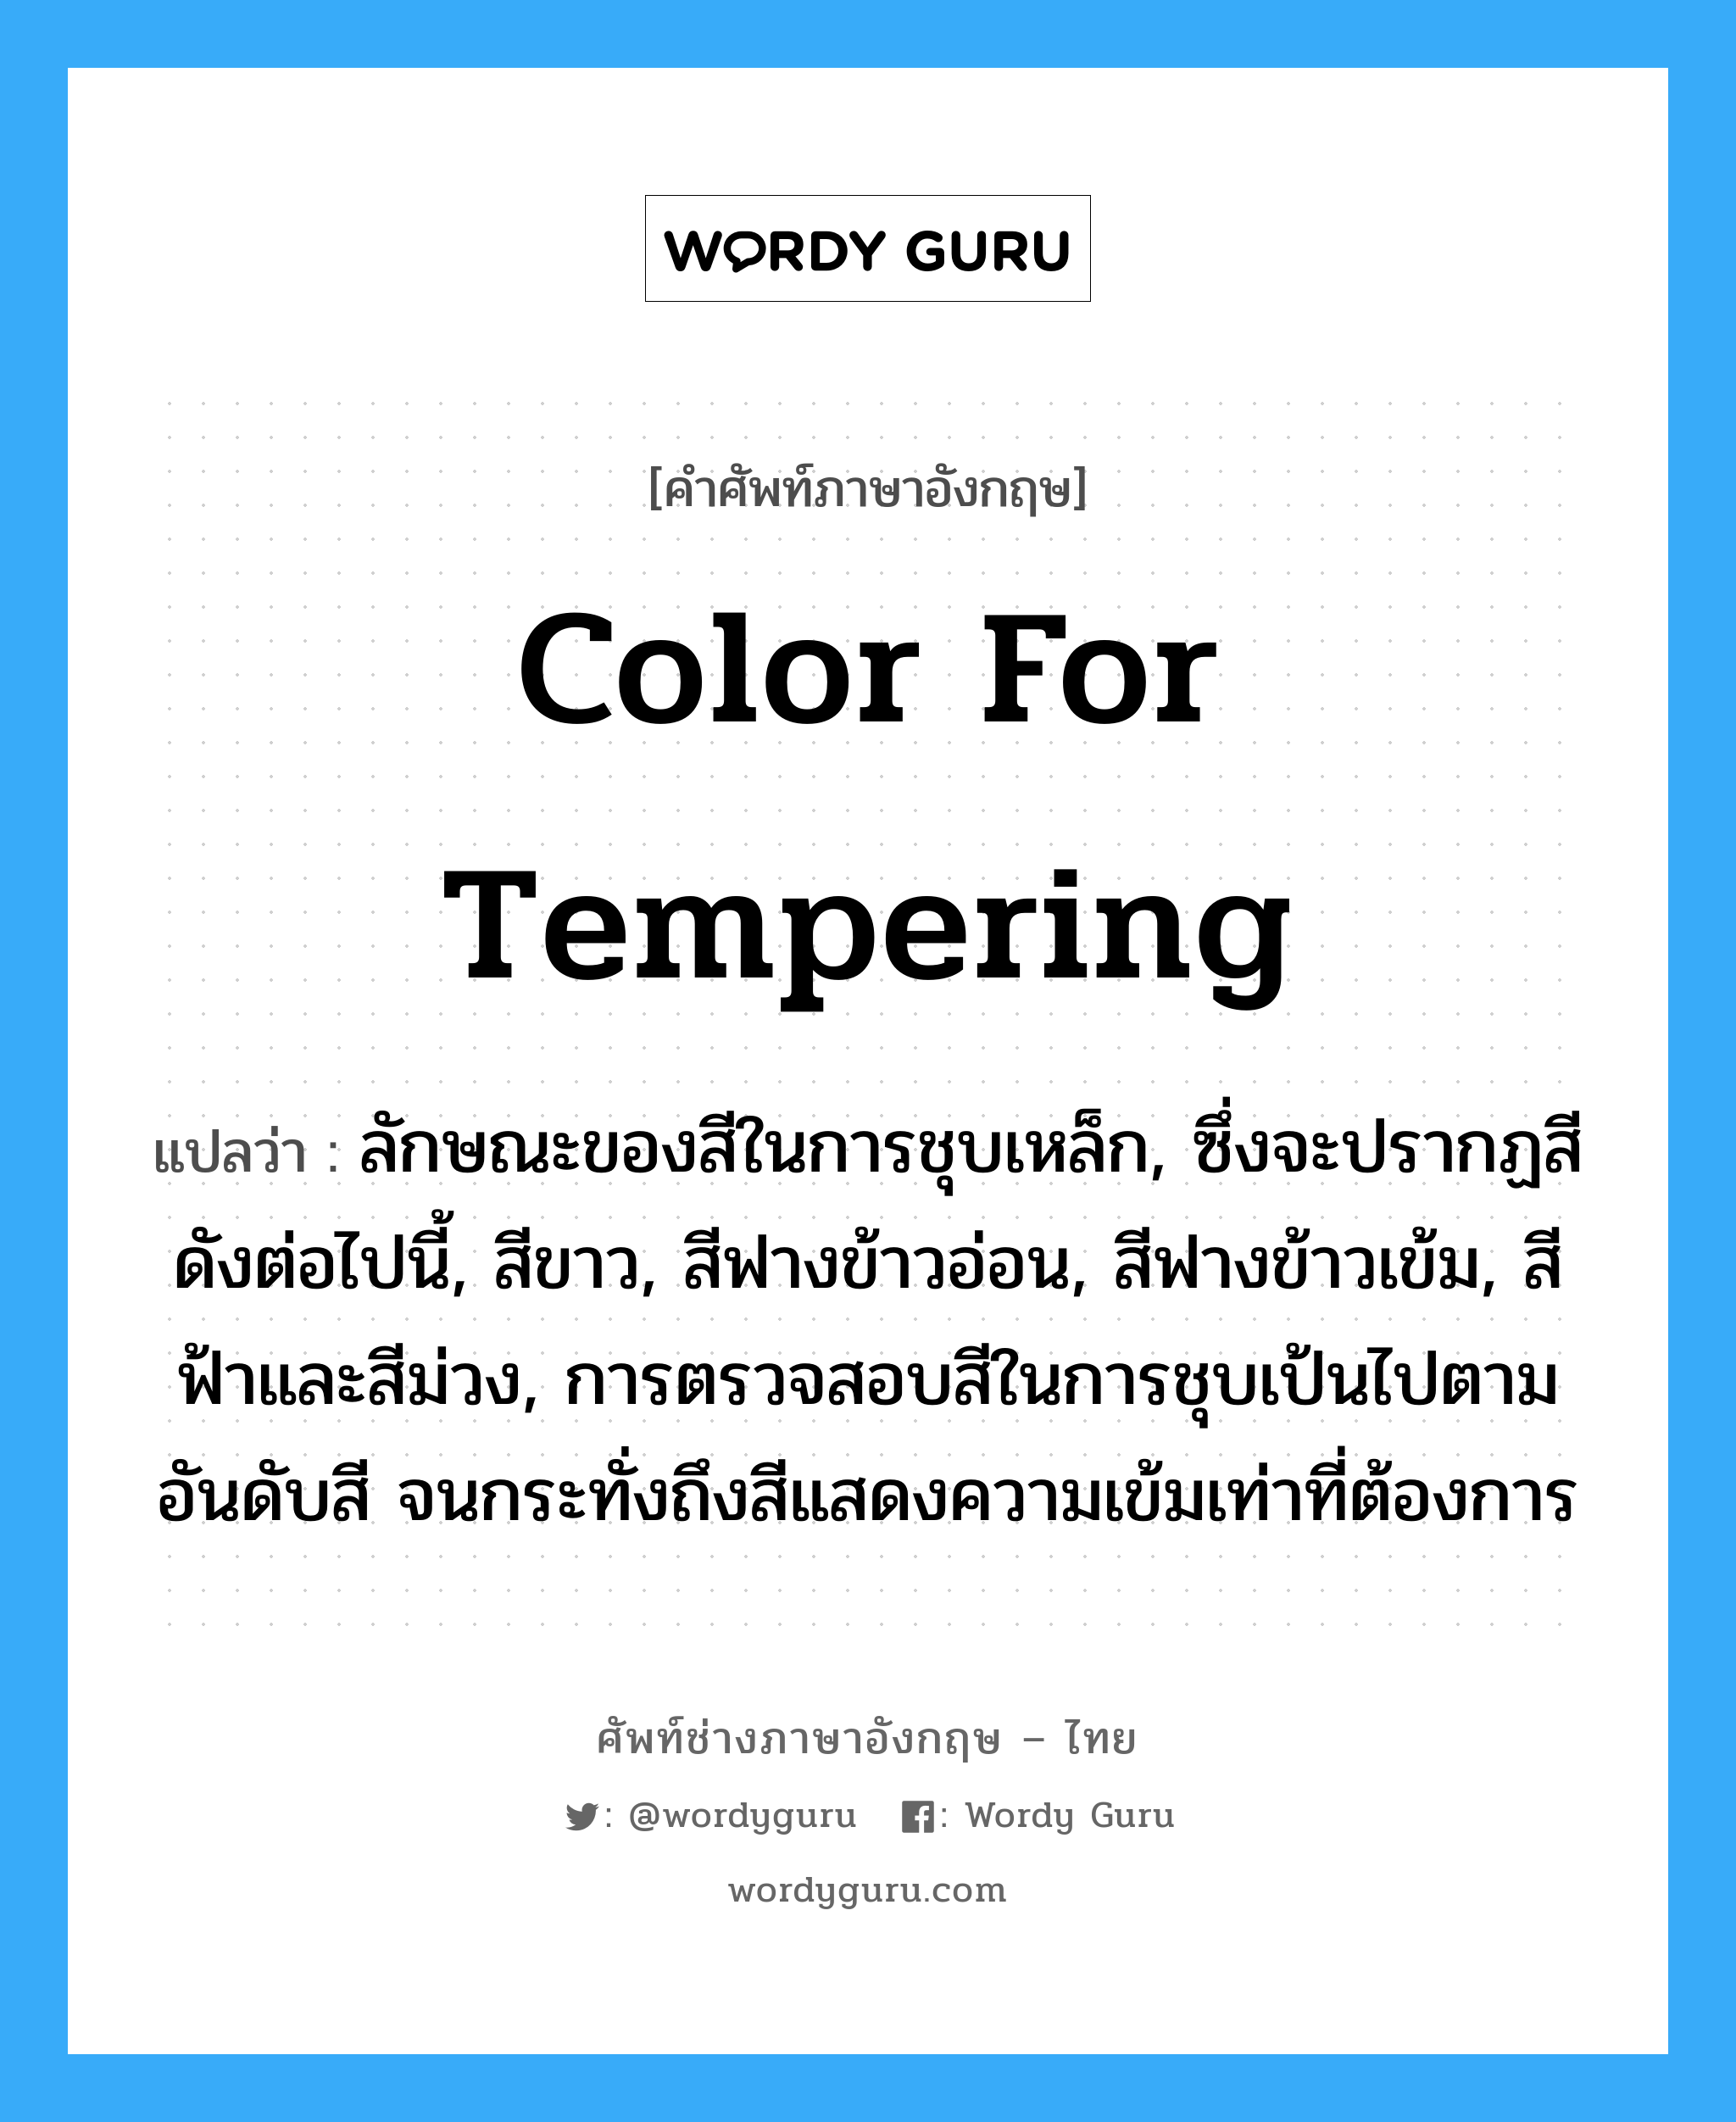 color for tempering แปลว่า?, คำศัพท์ช่างภาษาอังกฤษ - ไทย color for tempering คำศัพท์ภาษาอังกฤษ color for tempering แปลว่า ลักษณะของสีในการชุบเหล็ก, ซึ่งจะปรากฏสีดังต่อไปนี้, สีขาว, สีฟางข้าวอ่อน, สีฟางข้าวเข้ม, สีฟ้าและสีม่วง, การตรวจสอบสีในการชุบเป้นไปตามอันดับสี จนกระทั่งถึงสีแสดงความเข้มเท่าที่ต้องการ